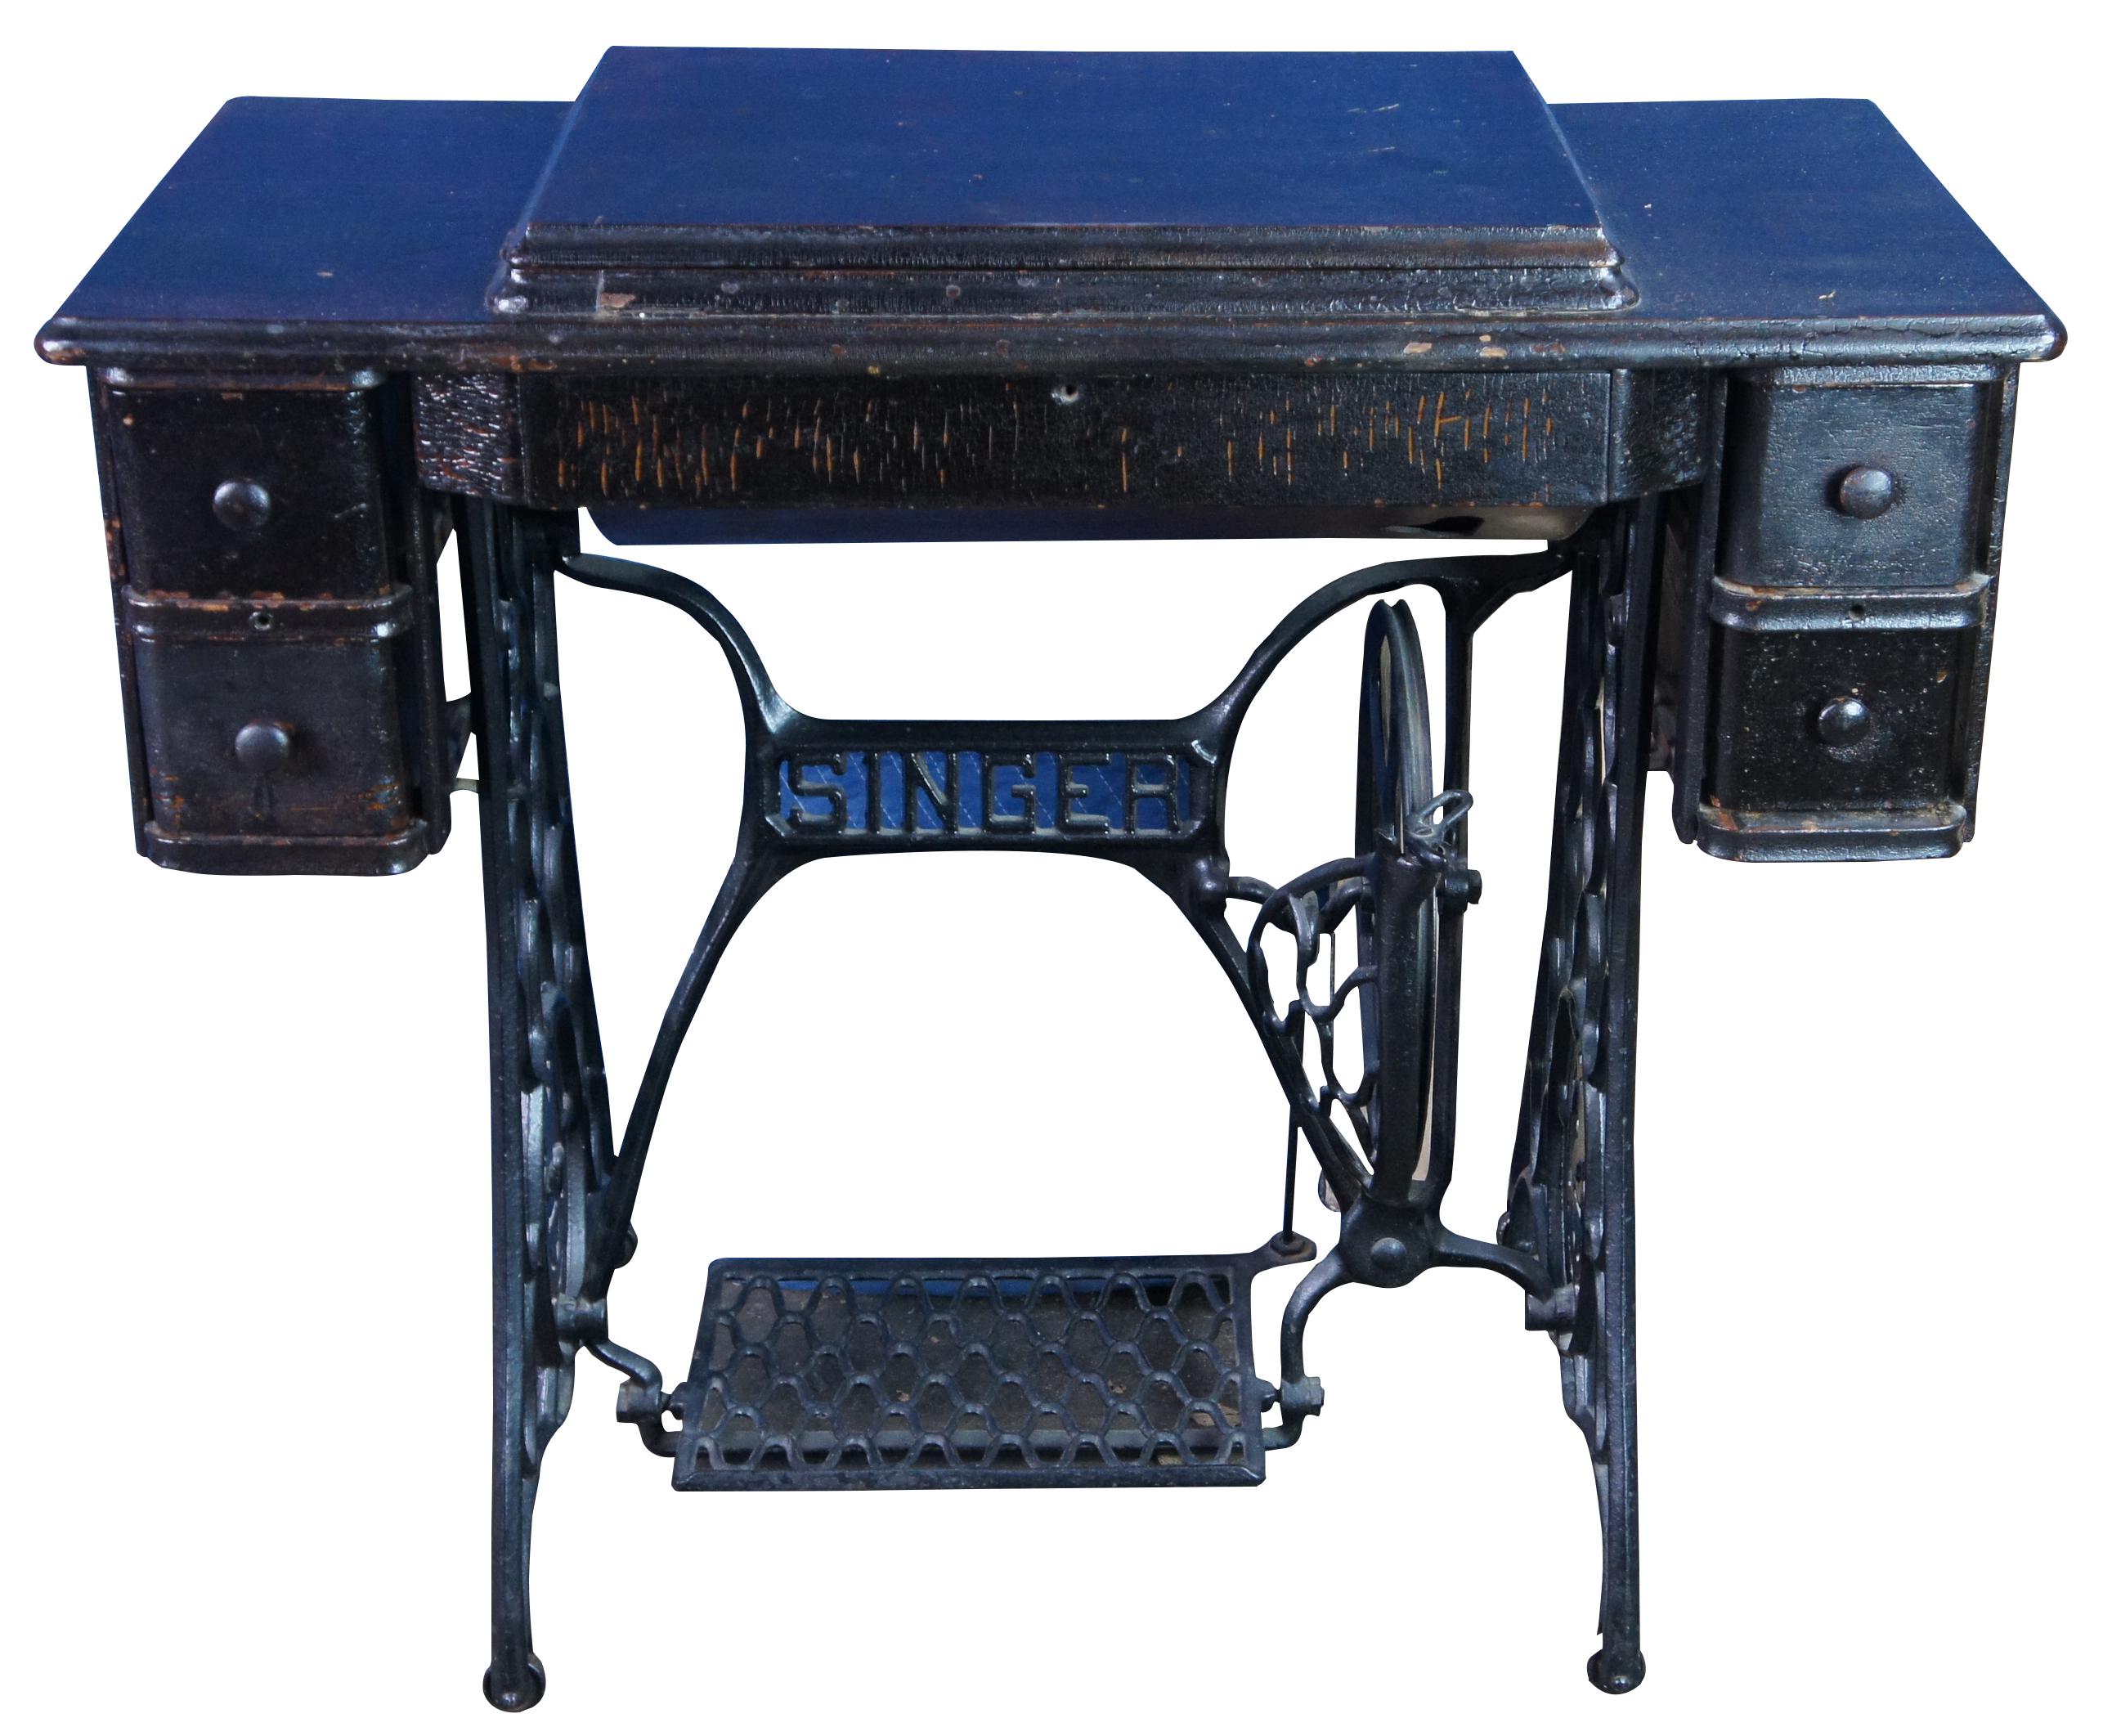 1919 singer sewing machine